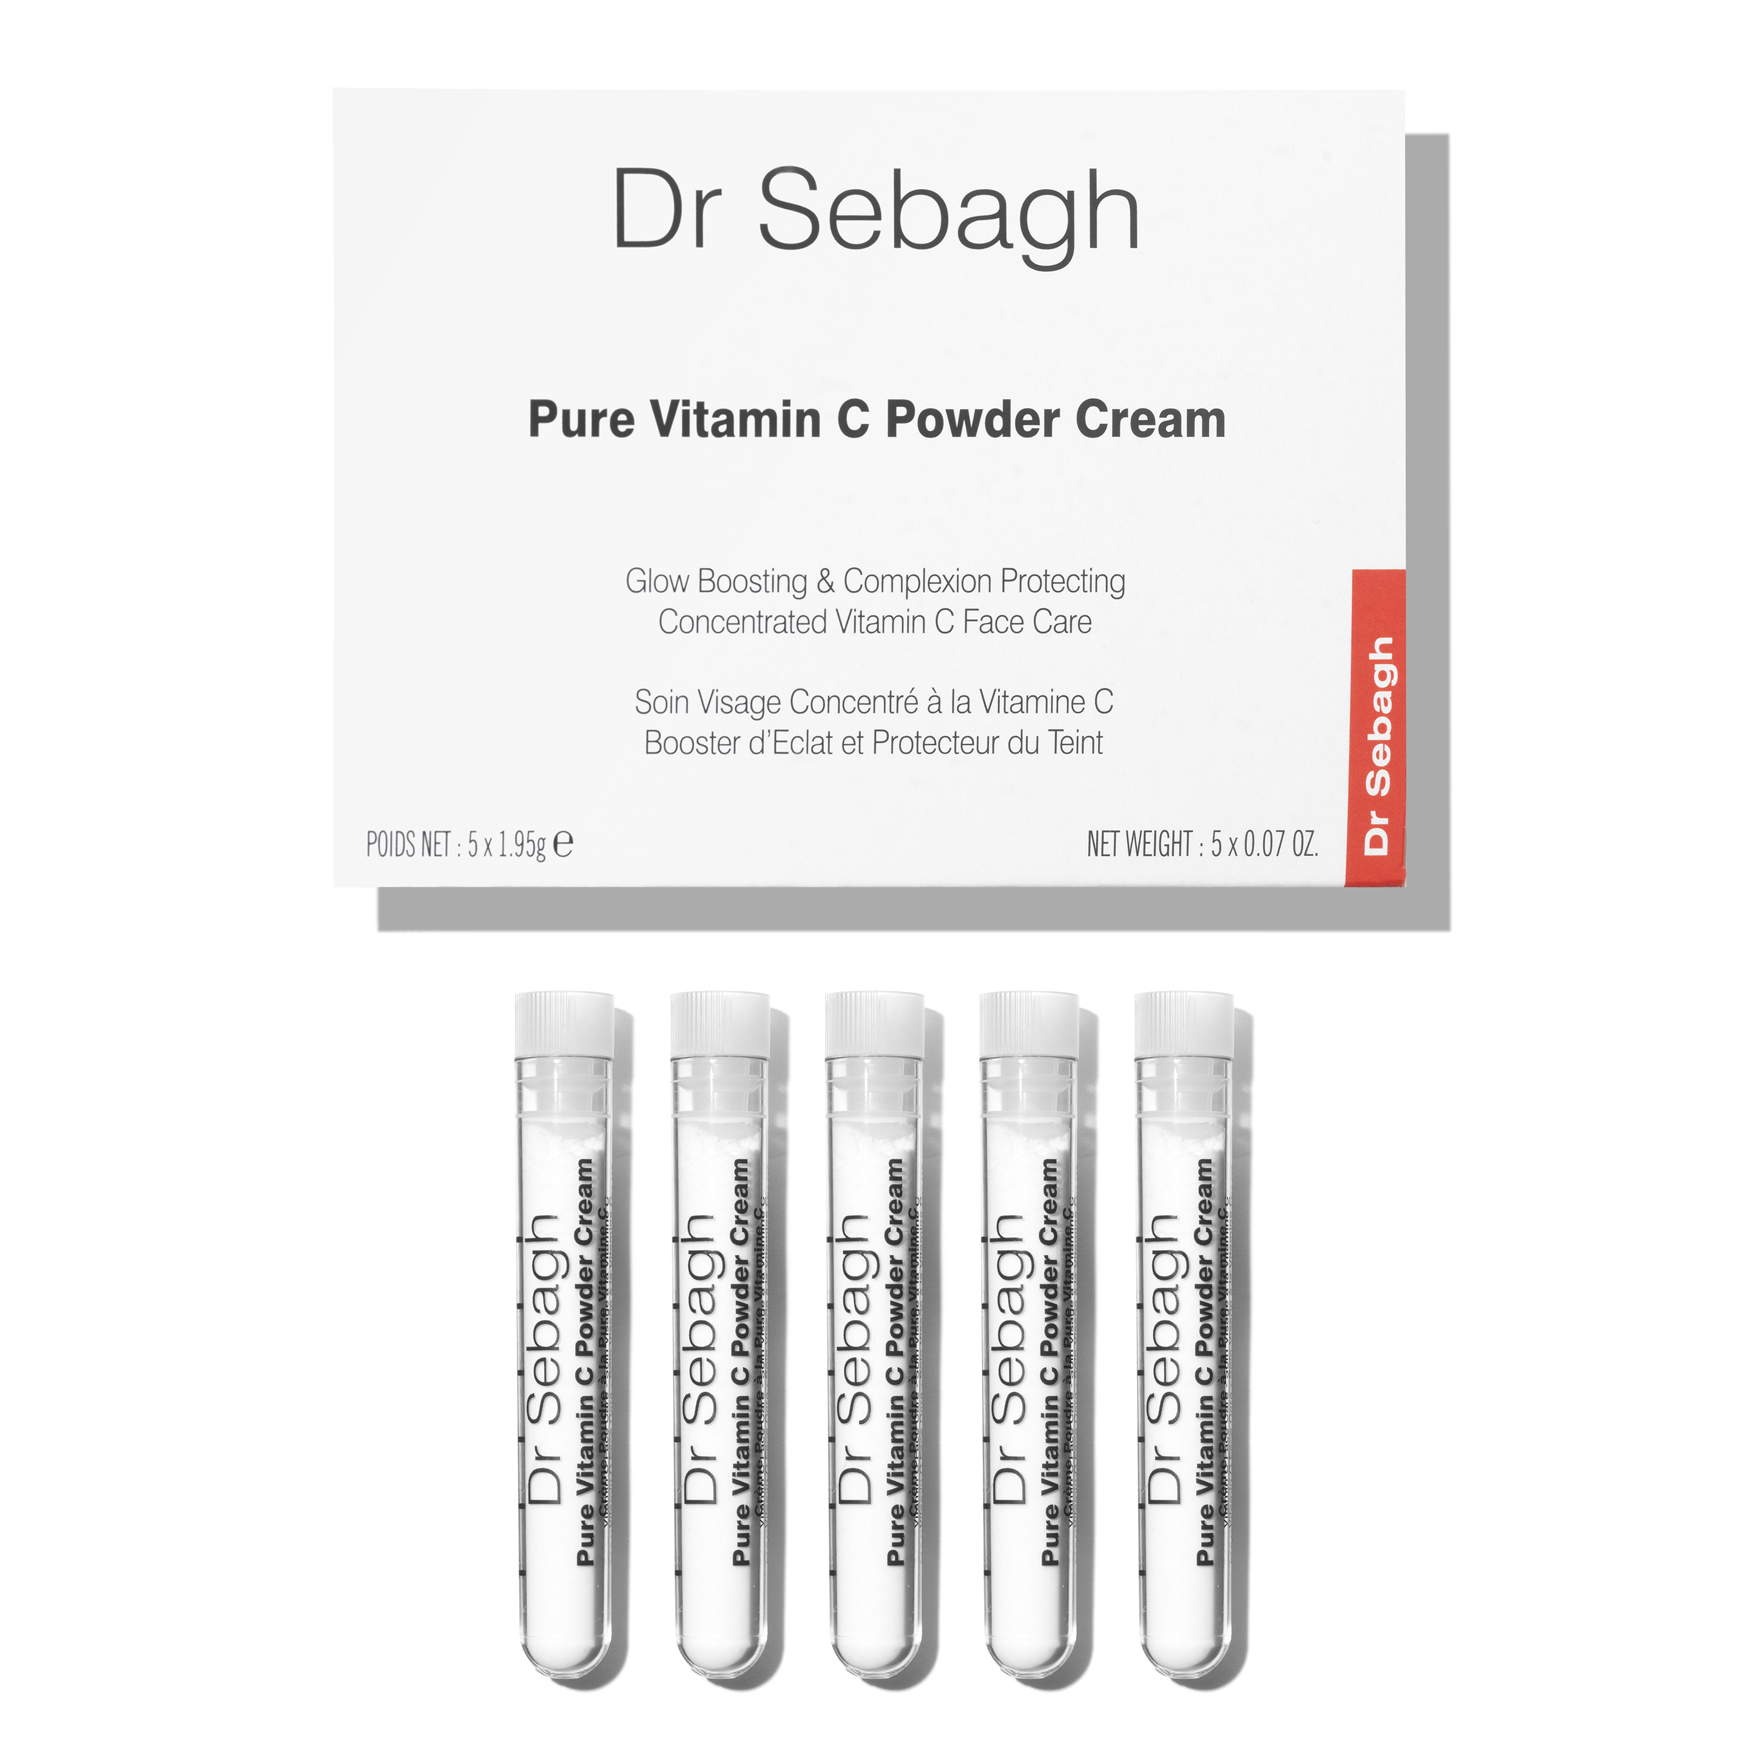 Pure Vitamin C Powder Cream - Dr Sebagh | Space NK